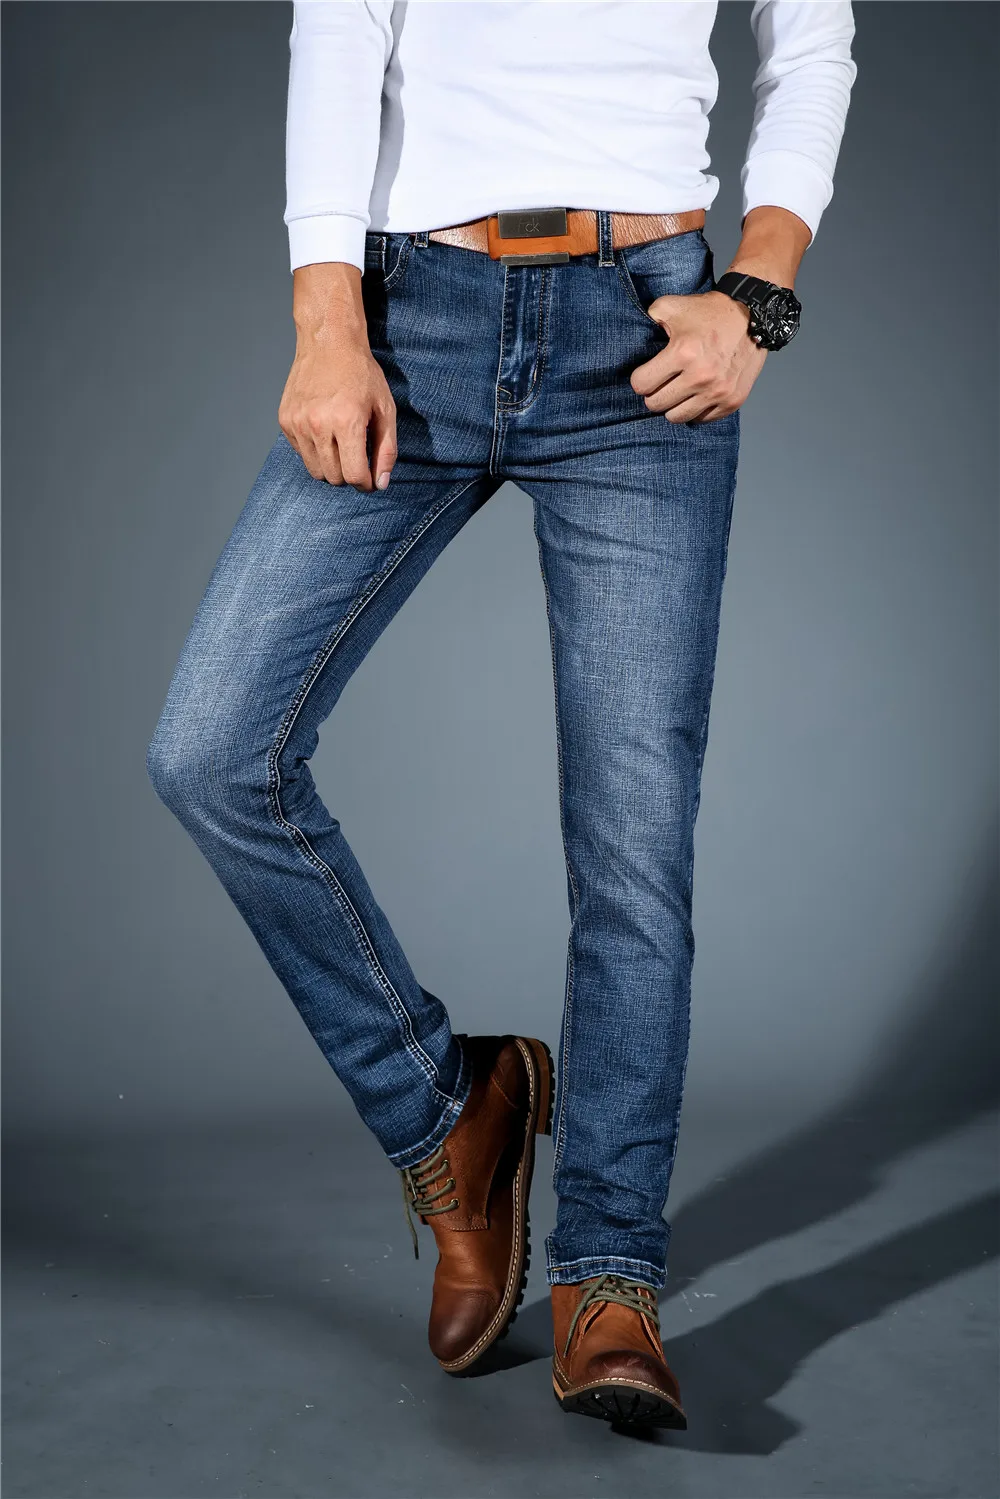 CHOLYL мужские джинсы средней длины из эластичного спандекса, облегающие джинсы, брюки для деловых мужчин, синие и черные цвета